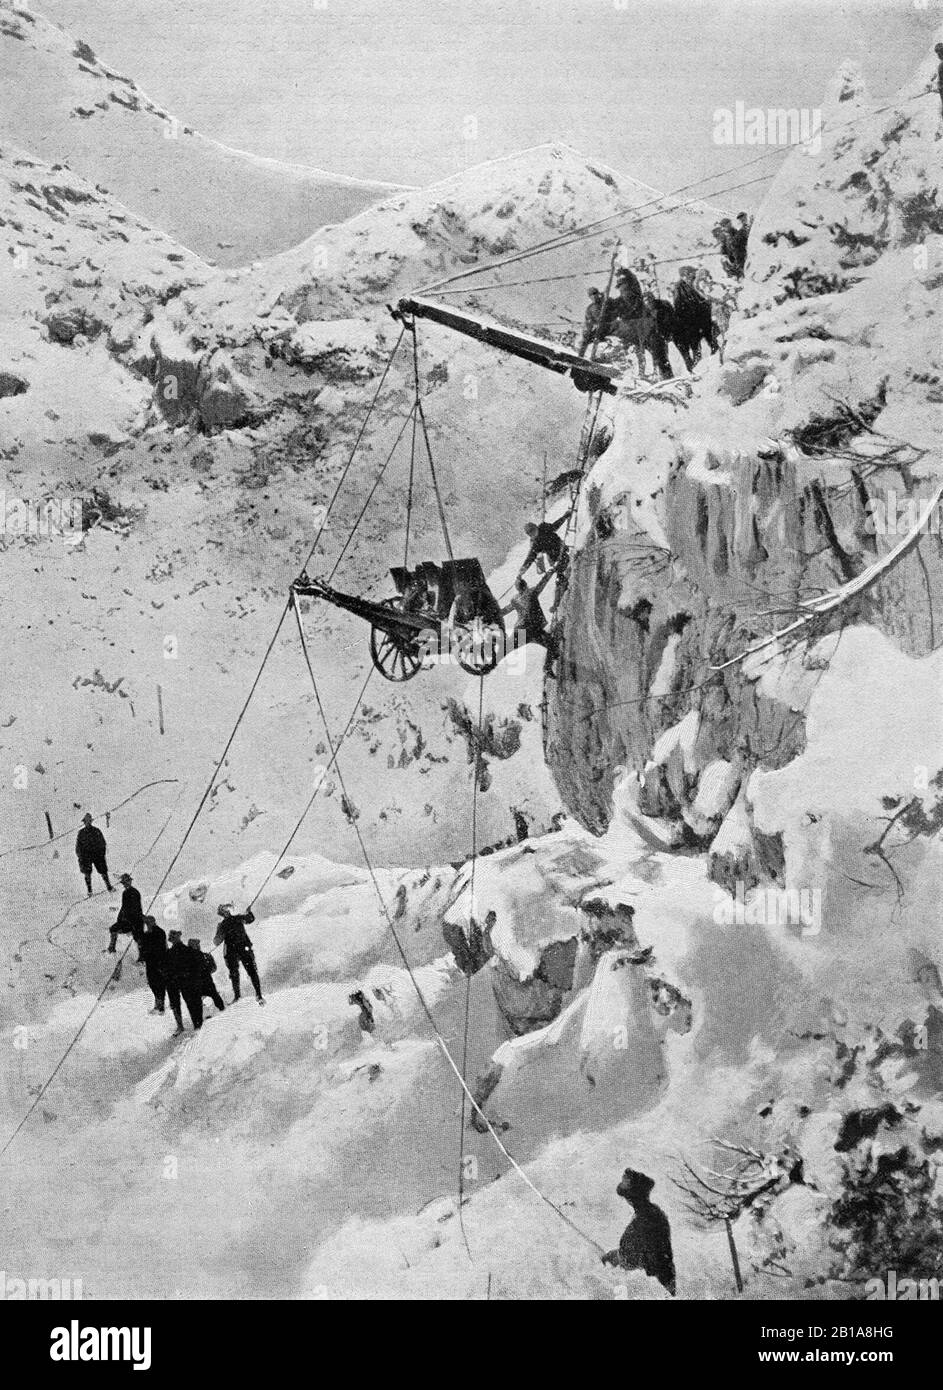 Eine Illustration von etwa 1915 italienischen Truppen, die während des Konflikts zwischen Italien und Österreich-Ungarn im Ersten Weltkrieg ein Artilleriegewehr auf einen schneebedeckten Berg in den Alpen schleppten Stockfoto